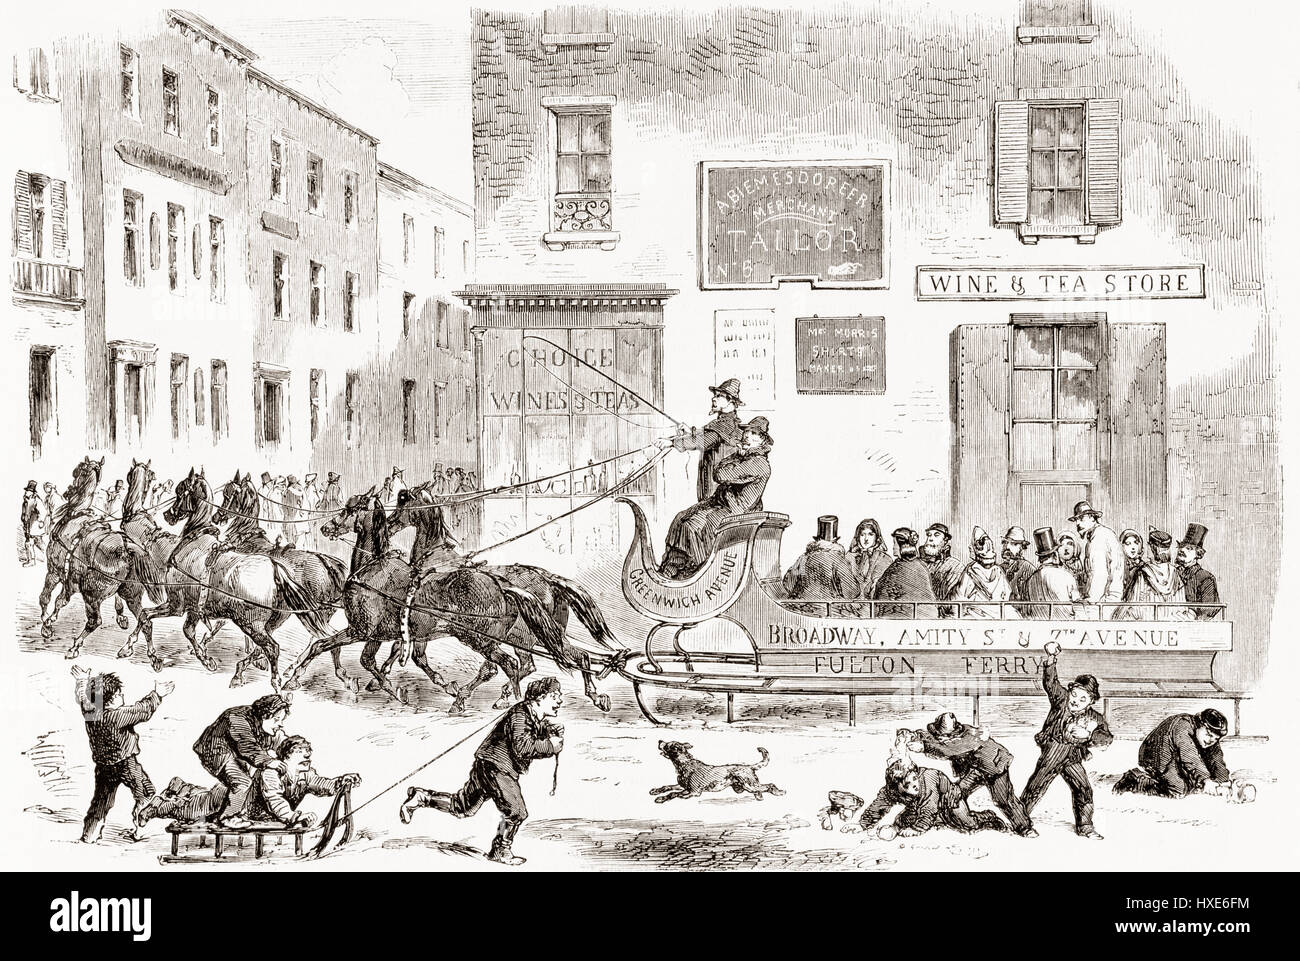 Un 1865 omnibus slitta trainata da sei cavalli su una strada invernale nella Città di New York, Stati Uniti d'America. Da L'Univers Illustre pubblicato 1867. Foto Stock